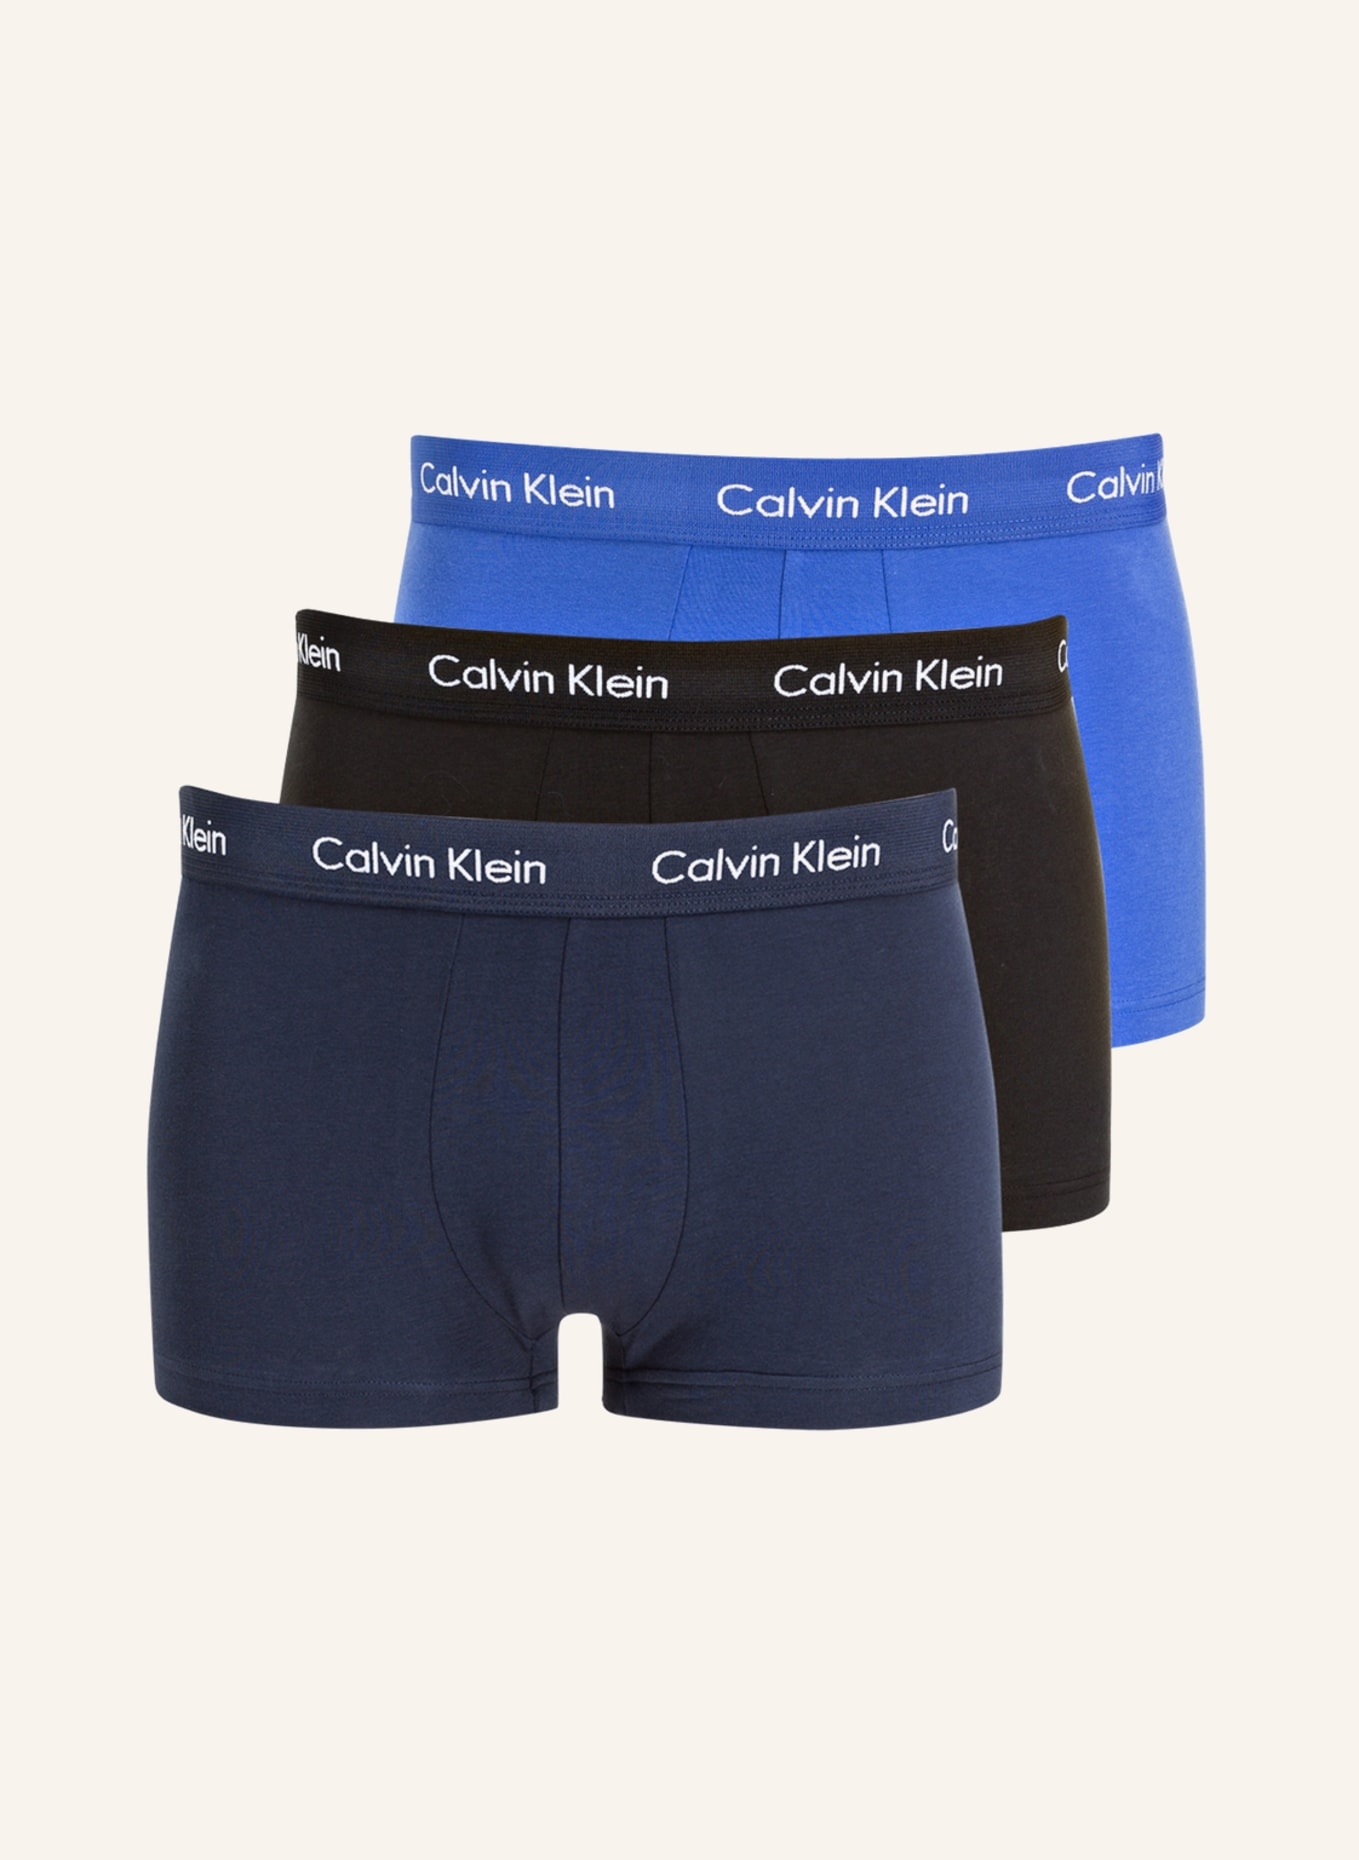 Calvin Klein 3er-Pack Boxershorts COTTON STRETCH, Farbe: SCHWARZ/ DUNKELBLAU/ BLAU (Bild 1)